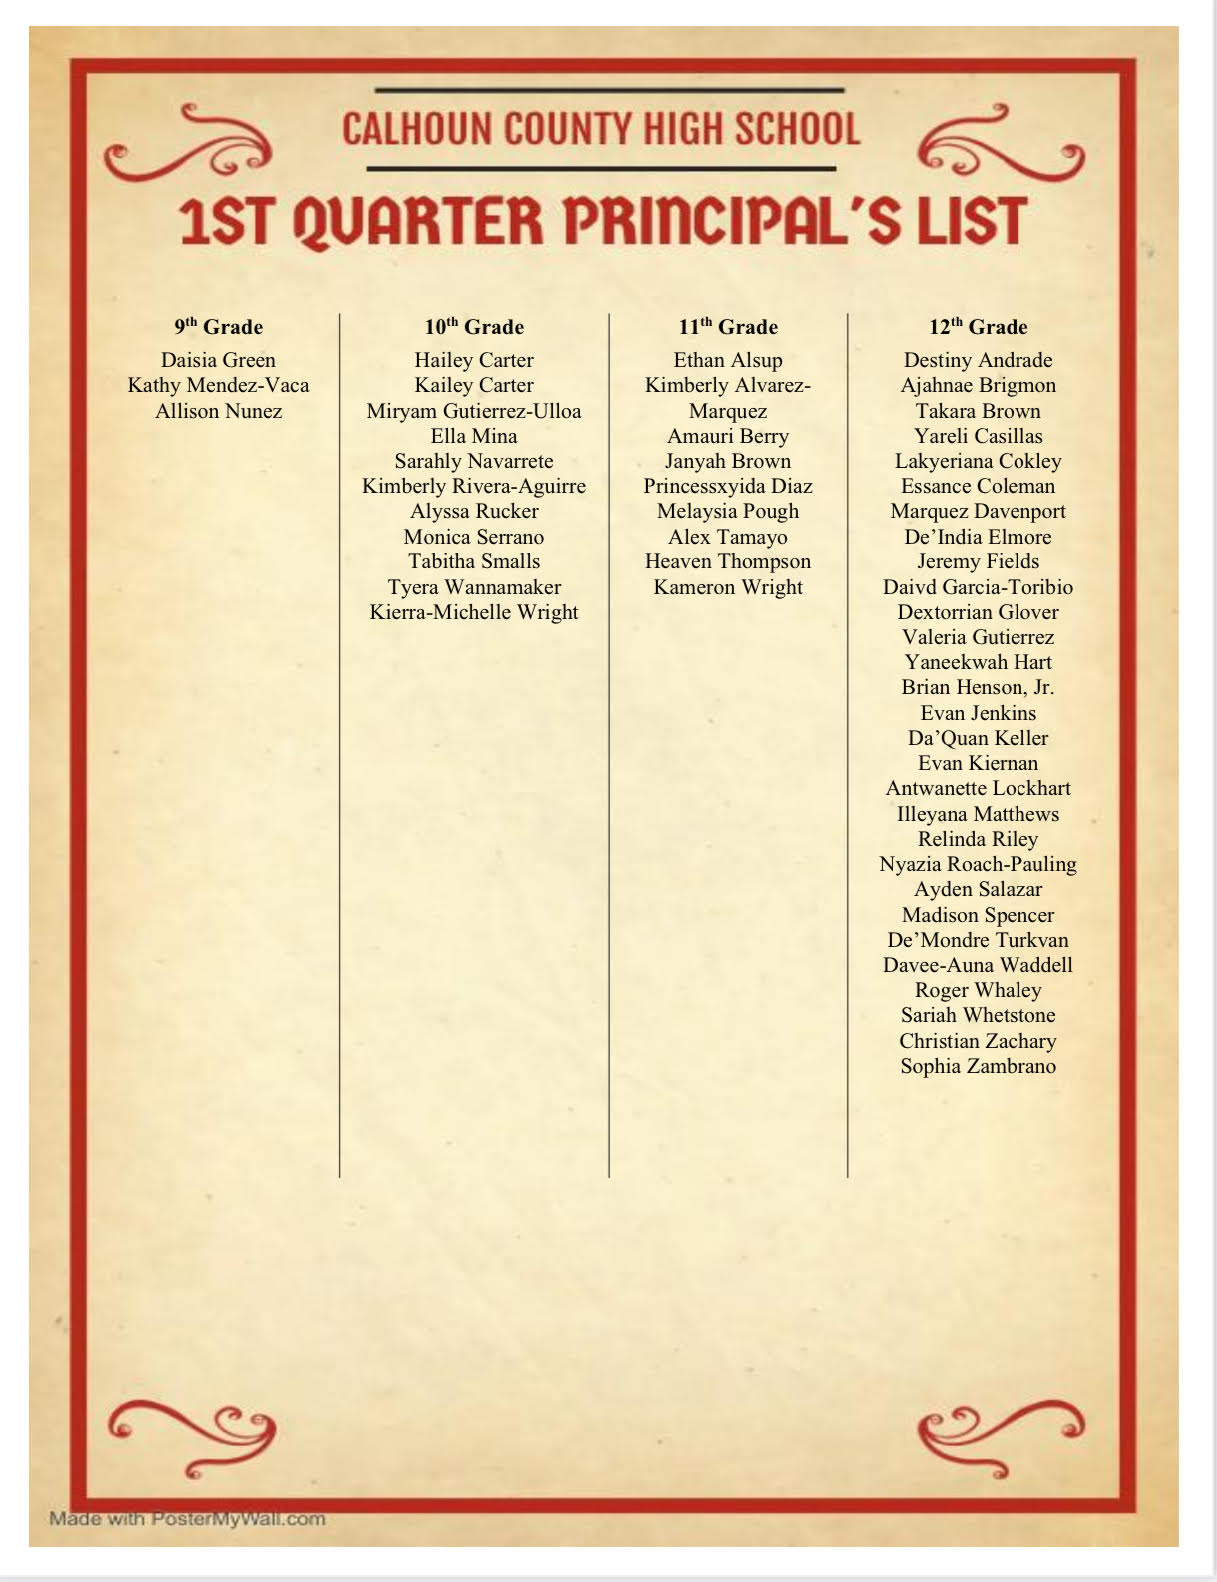 Quarter 1 Principal's List